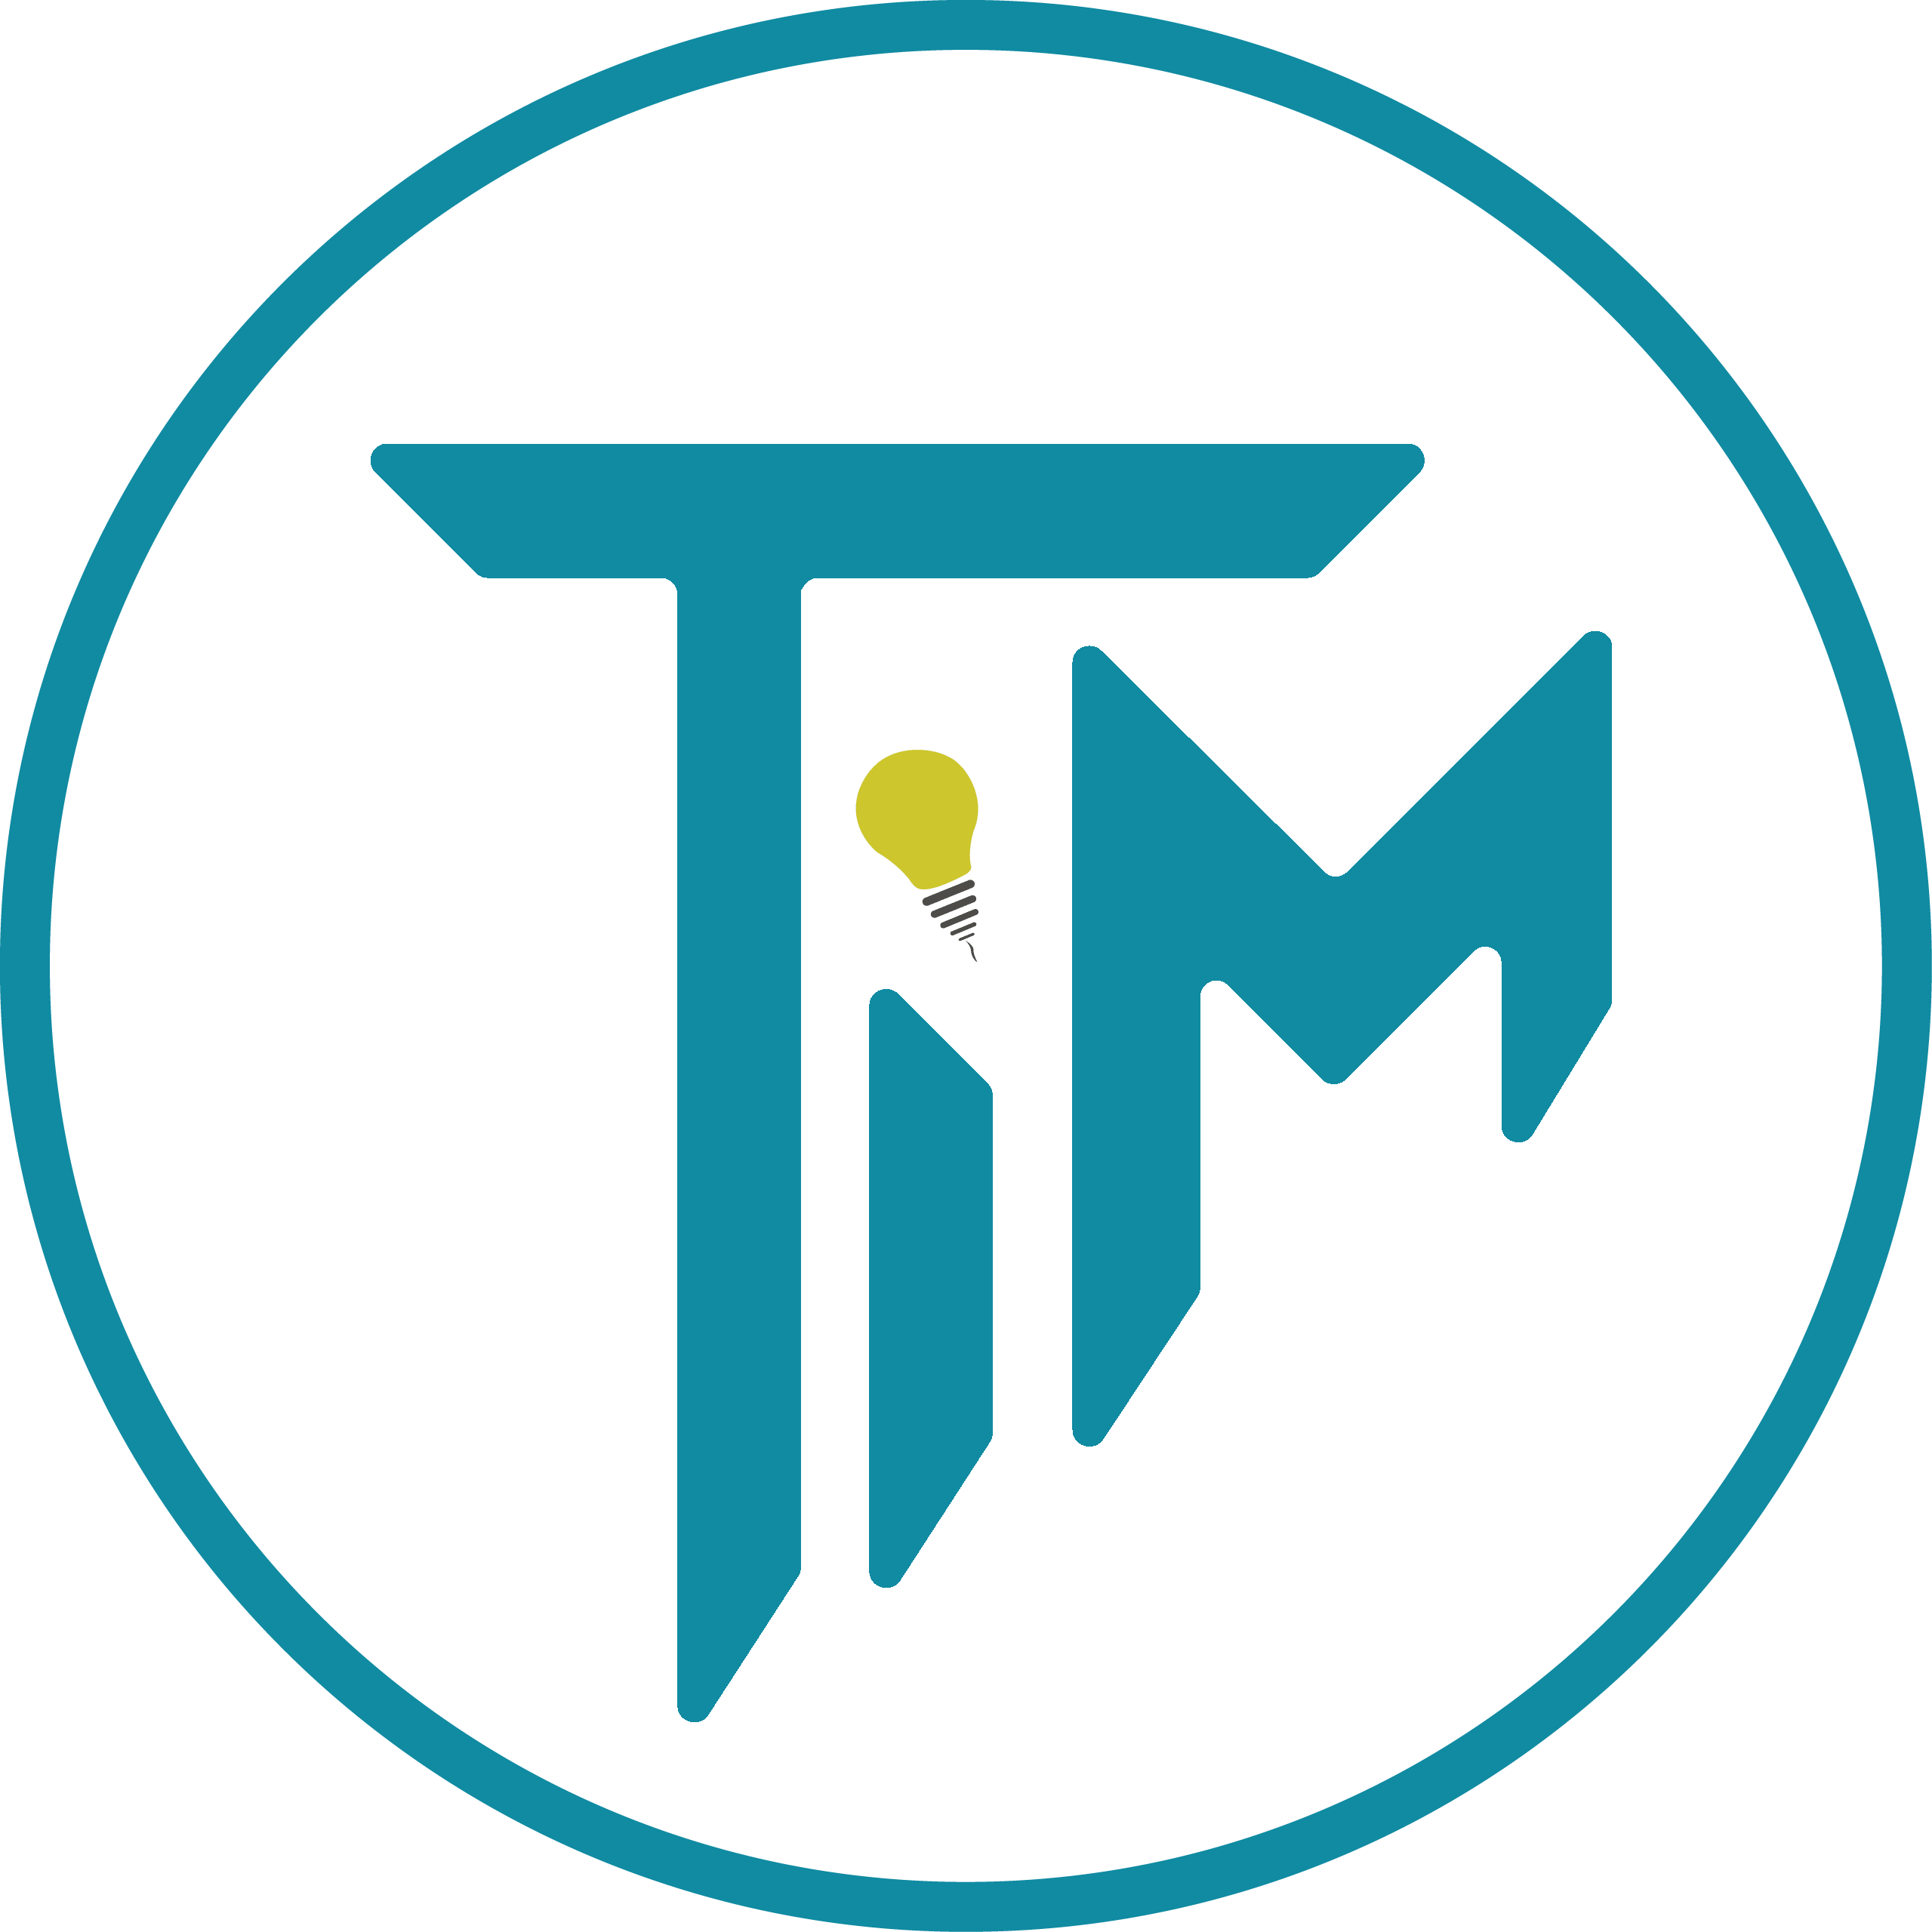 Tim Logo - Tim Logos